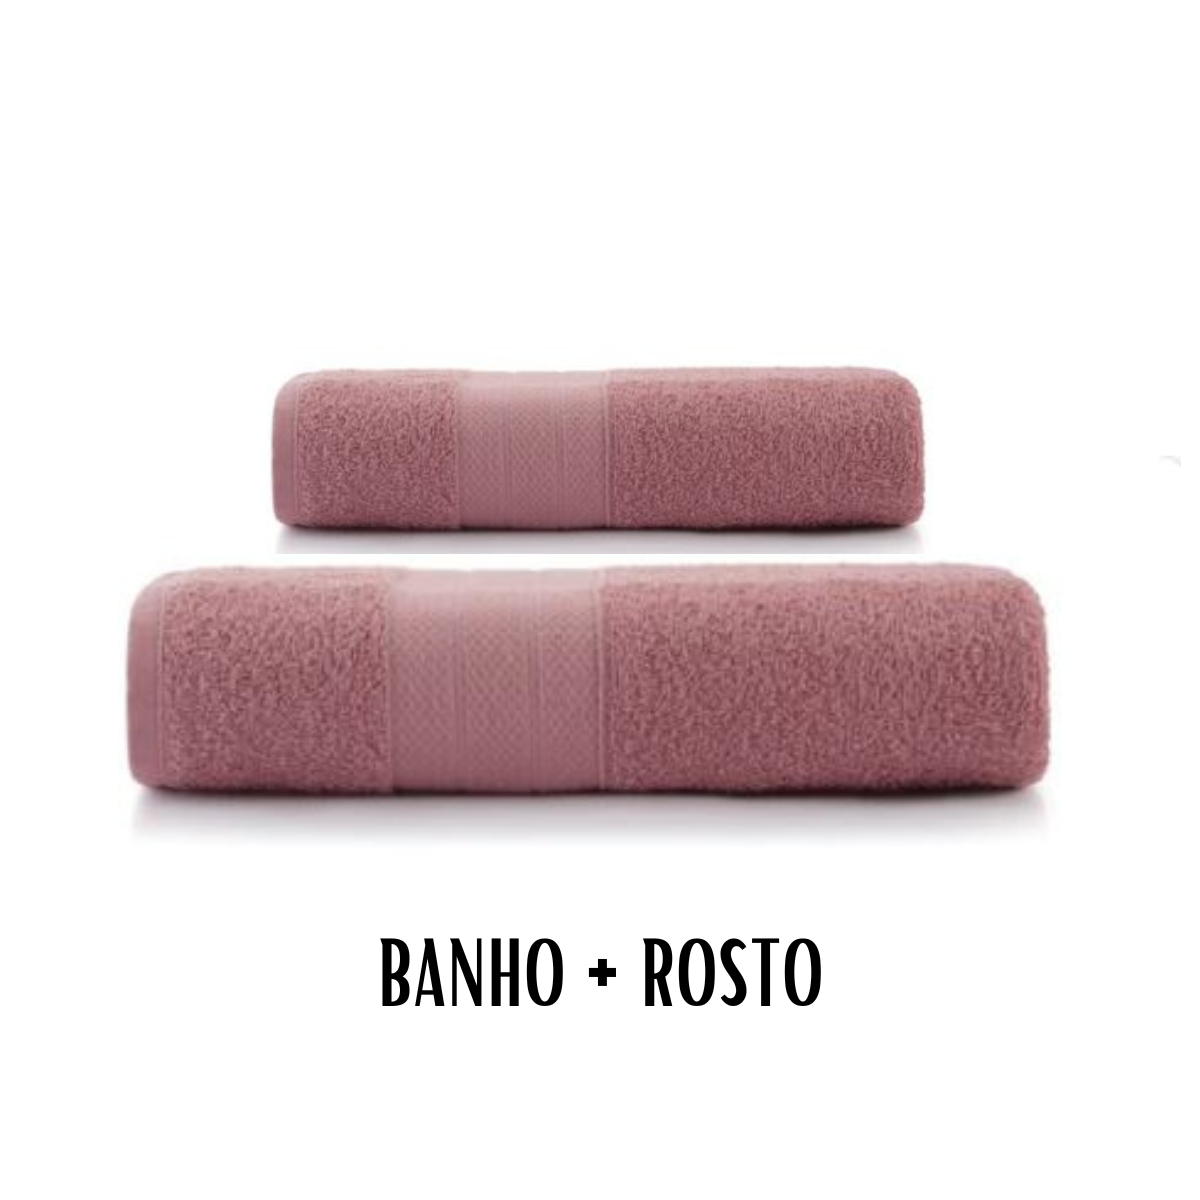 Kit Toalha de Banho + Rosto Altenburg Toquio 2 Pcs:roxo Melhow - 1